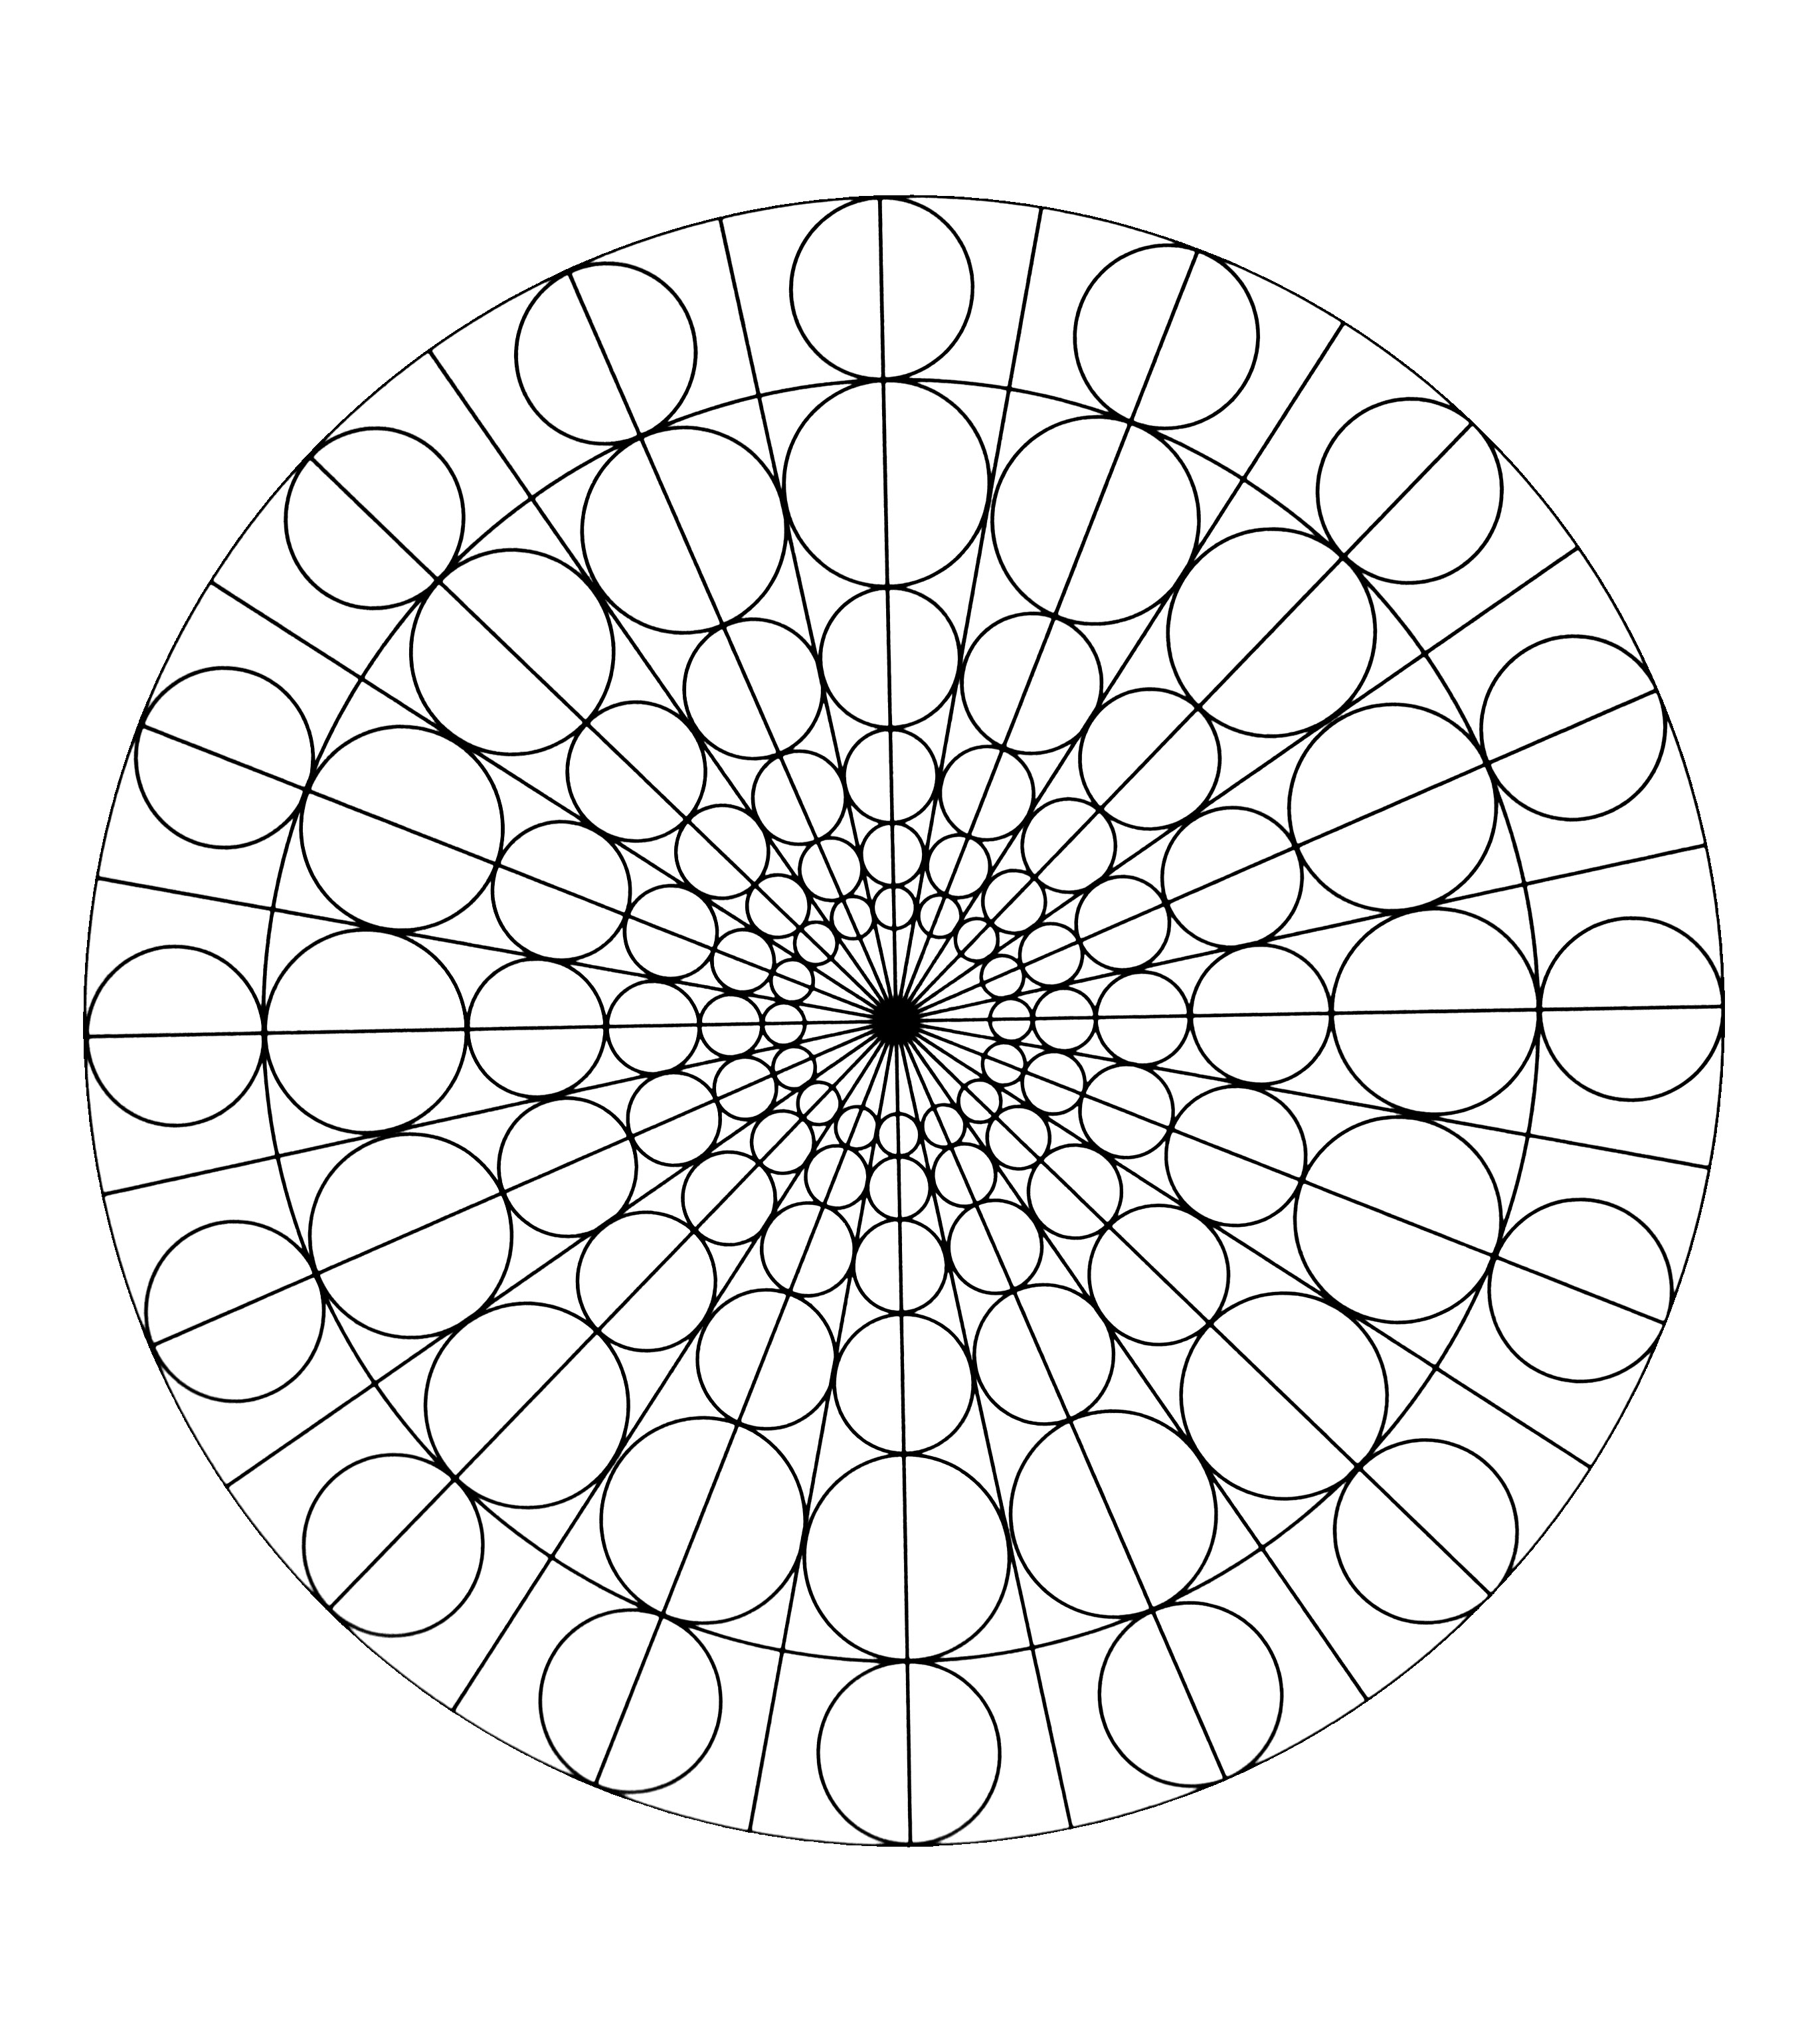 Très joli mandala figurant plusieurs cercles de différentes tailles. Assez simple à colorier.